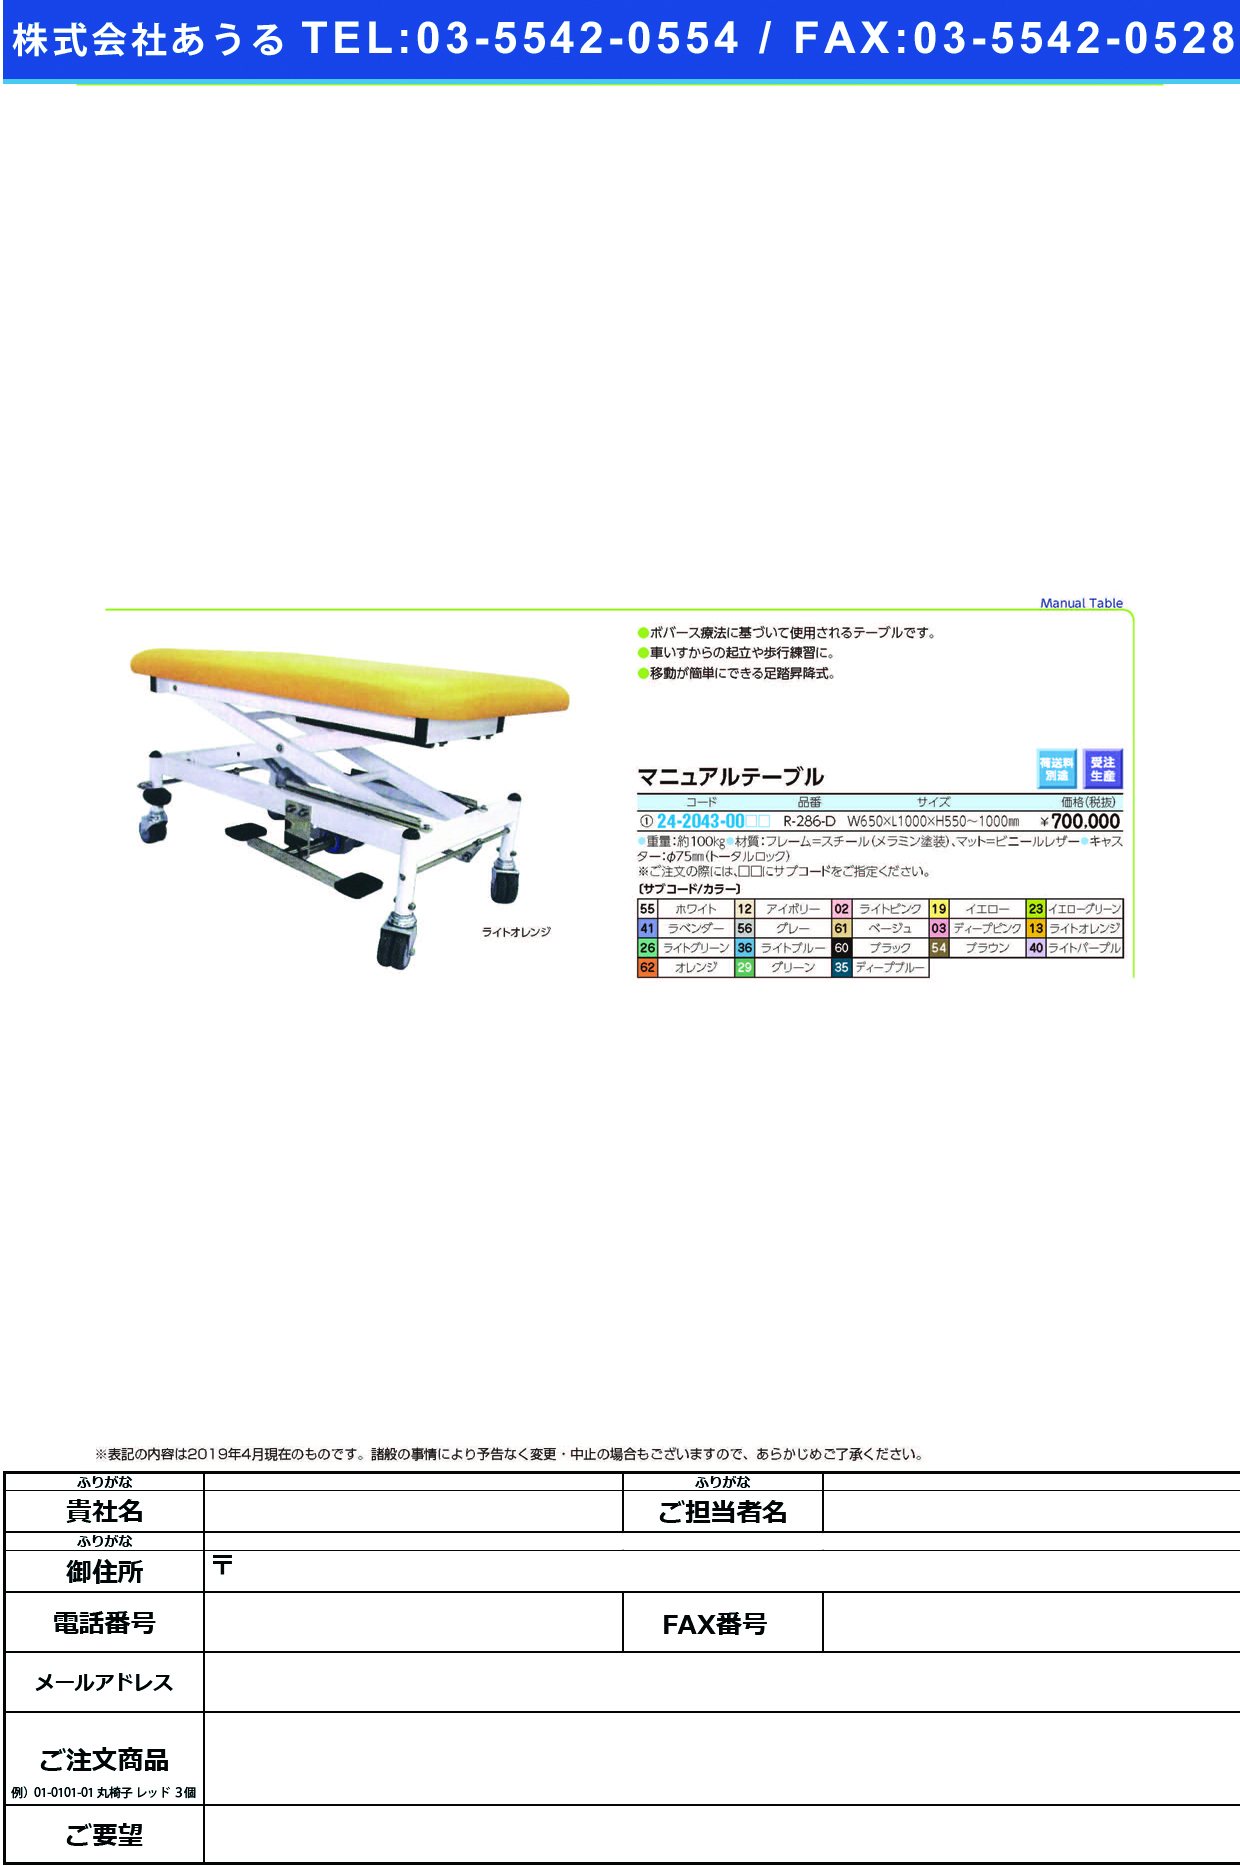 (24-2043-00)マニュアルテーブル R-286-D ﾏﾆｭｱﾙﾃｰﾌﾞﾙ グレー【1台単位】【2019年カタログ商品】